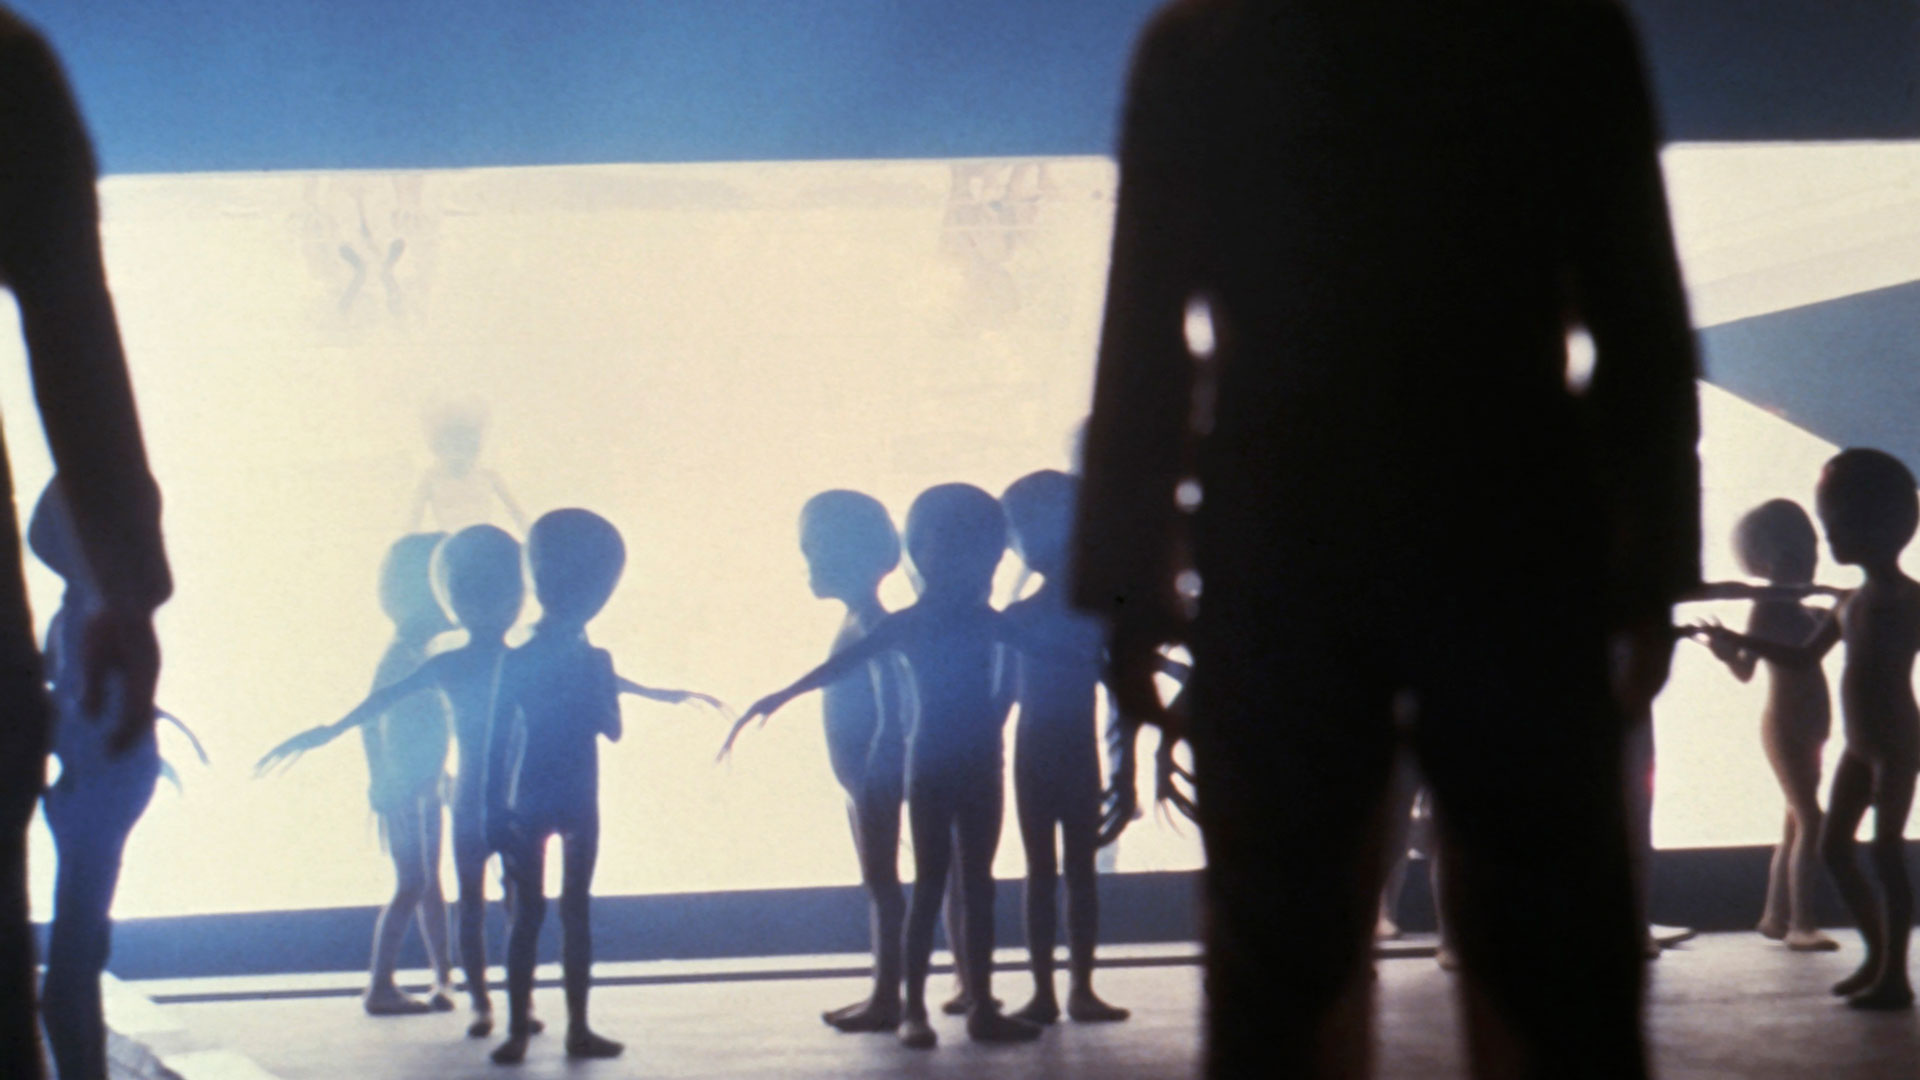 Los extraterrestes llegan a la tierra. Spielberg trabajó varios años en el proyecto. recién pudo concretarlo después de Tiburón (Photo by Screen Archives/Getty Images)